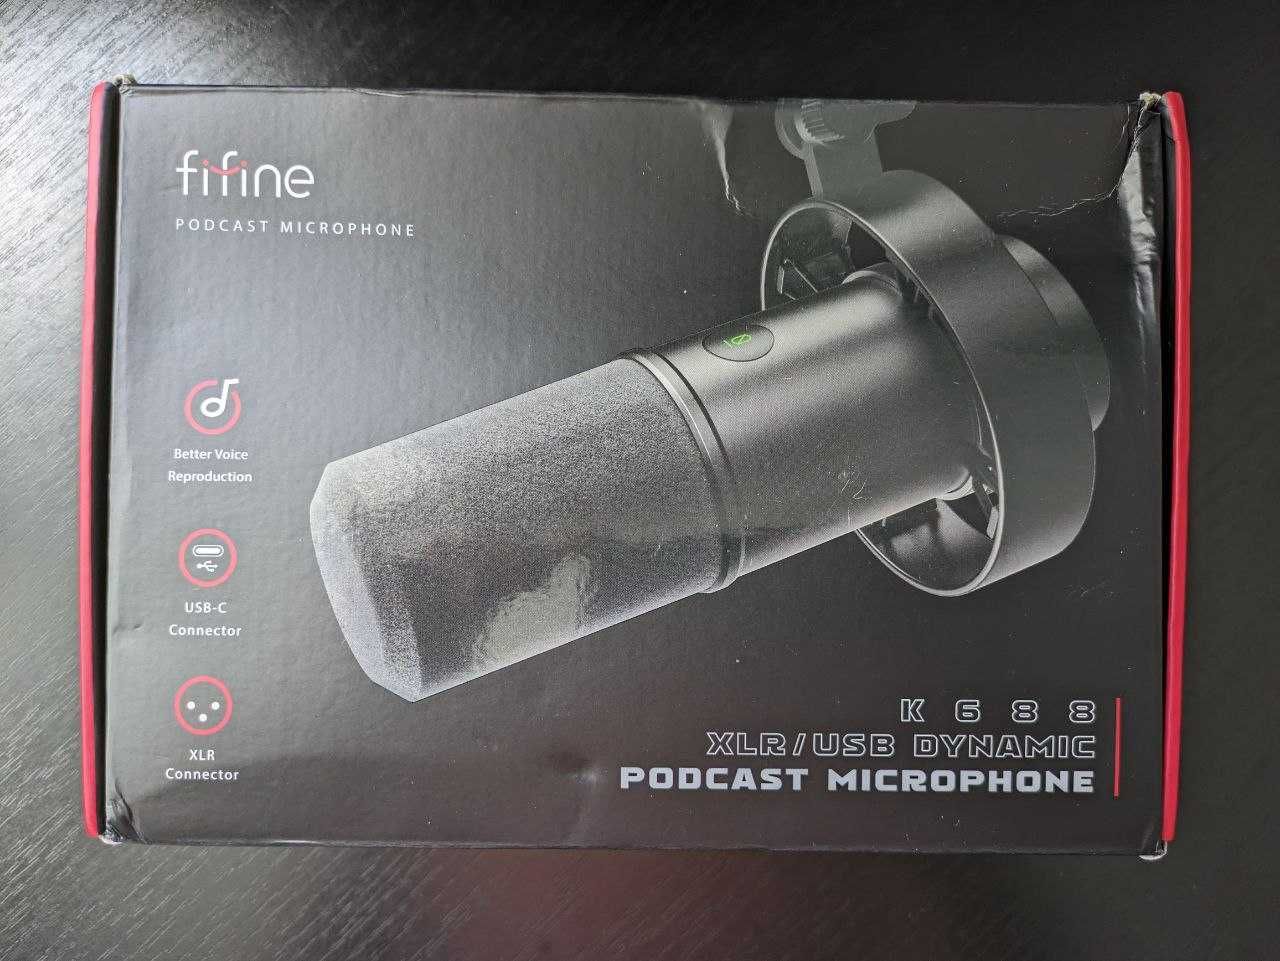 Динамический микрофон FIFINE K688 XLR/USB + стойка пантограф FIFINE